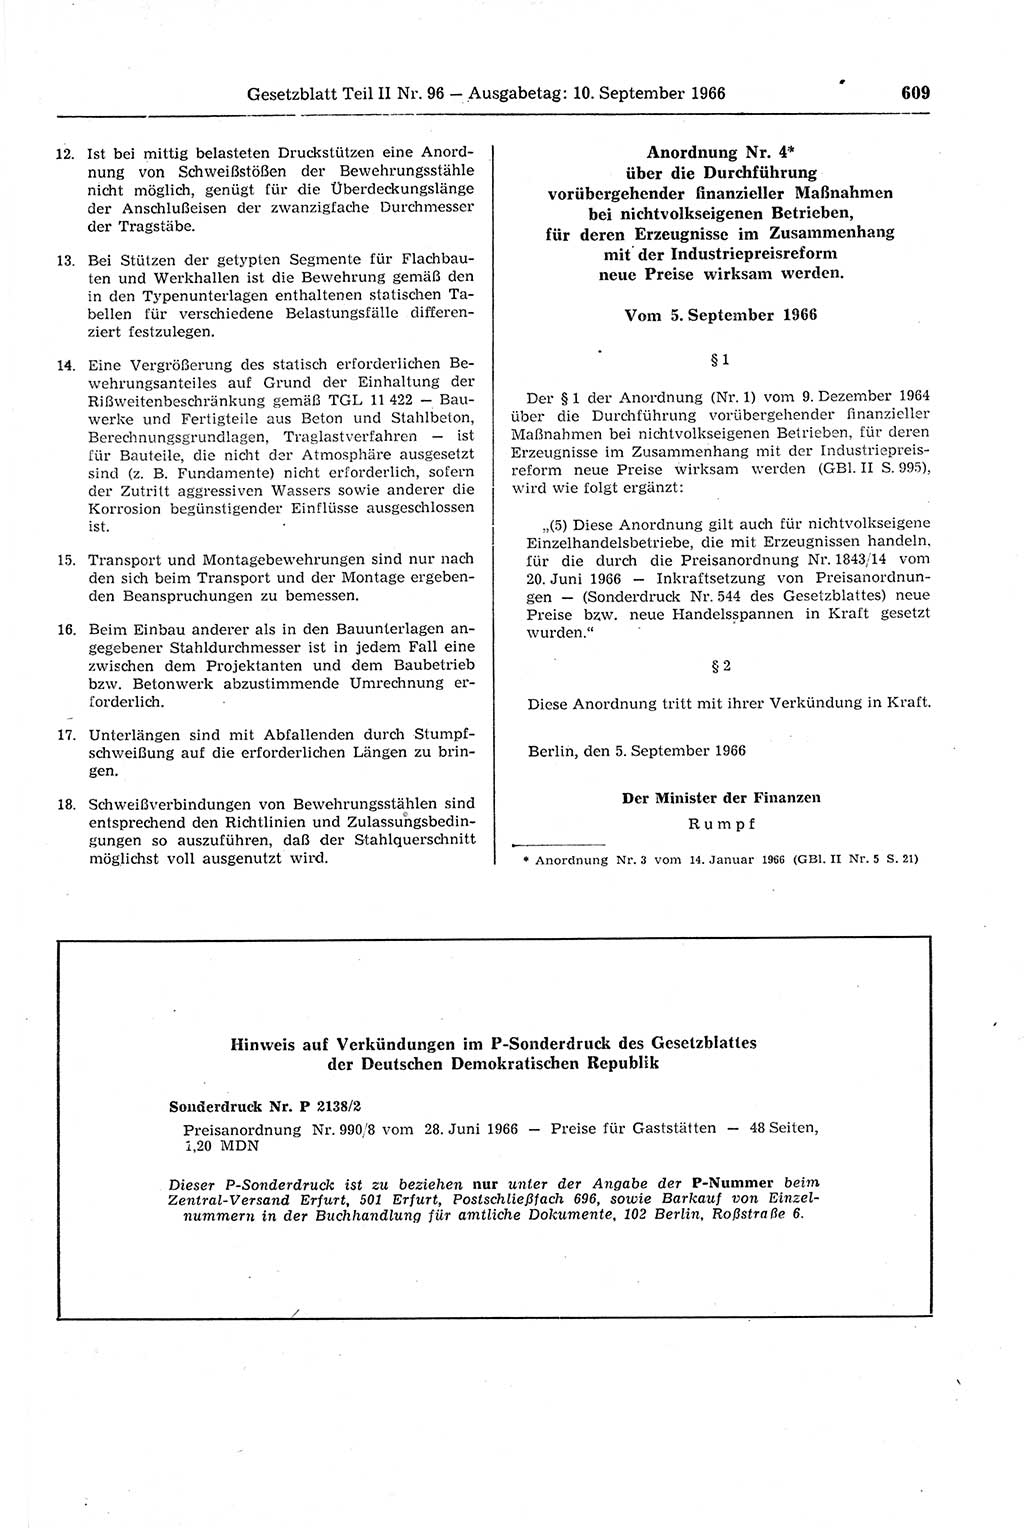 Gesetzblatt (GBl.) der Deutschen Demokratischen Republik (DDR) Teil ⅠⅠ 1966, Seite 609 (GBl. DDR ⅠⅠ 1966, S. 609)